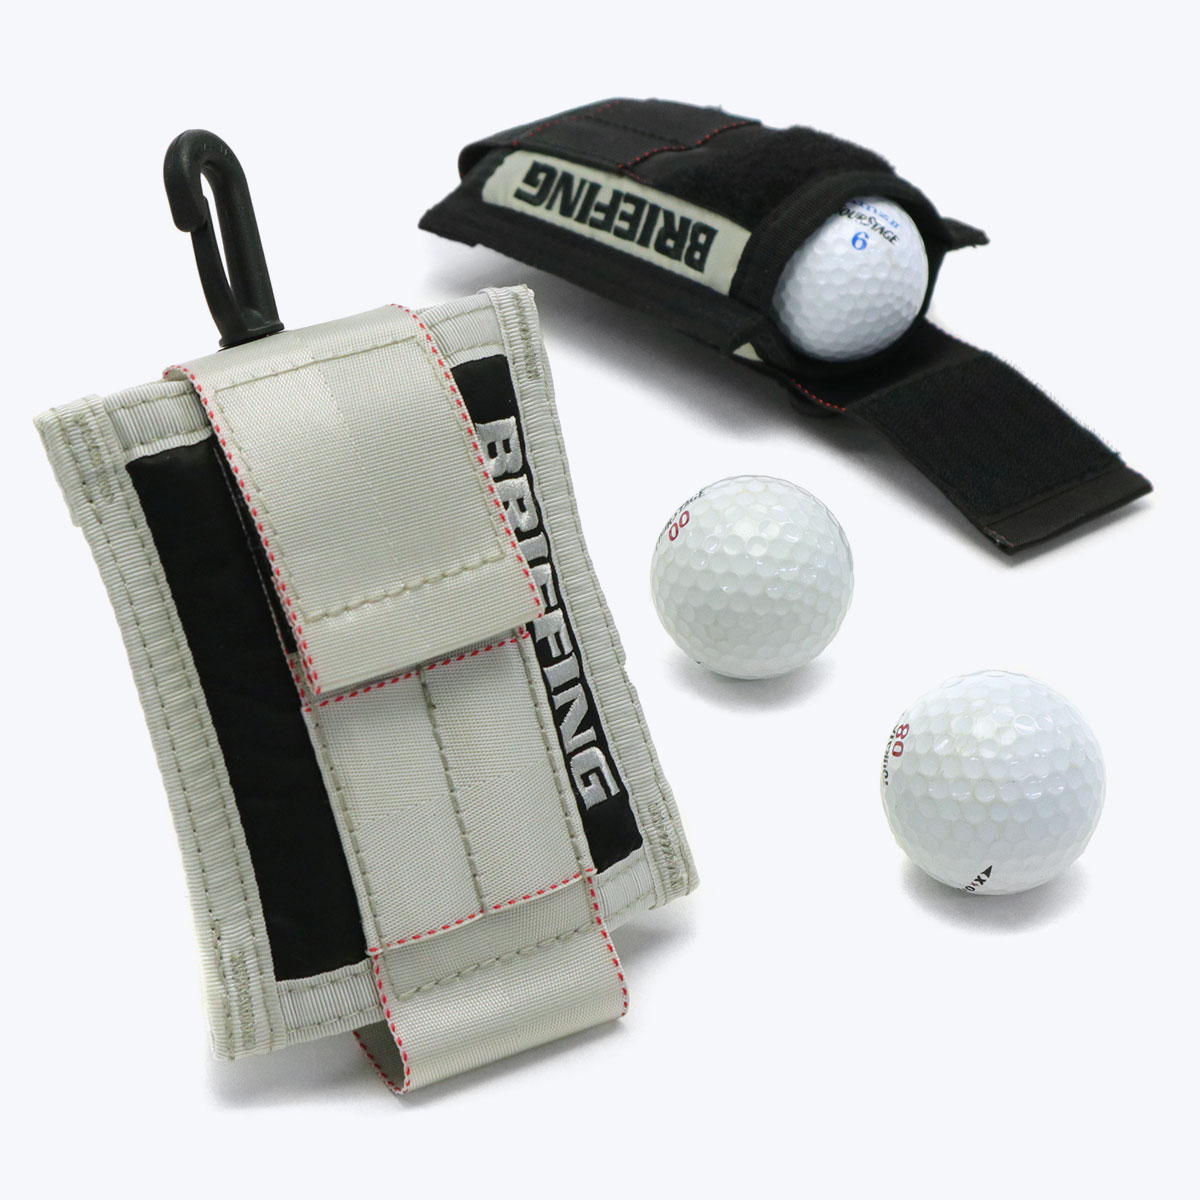 日本正規品 ブリーフィング ゴルフ ボールホルダー BRIEFING GOLF NEW BALL HOLDER HOLIDAY ポーチ ボールポーチ  撥水 抗菌 メンズ BRG223G76